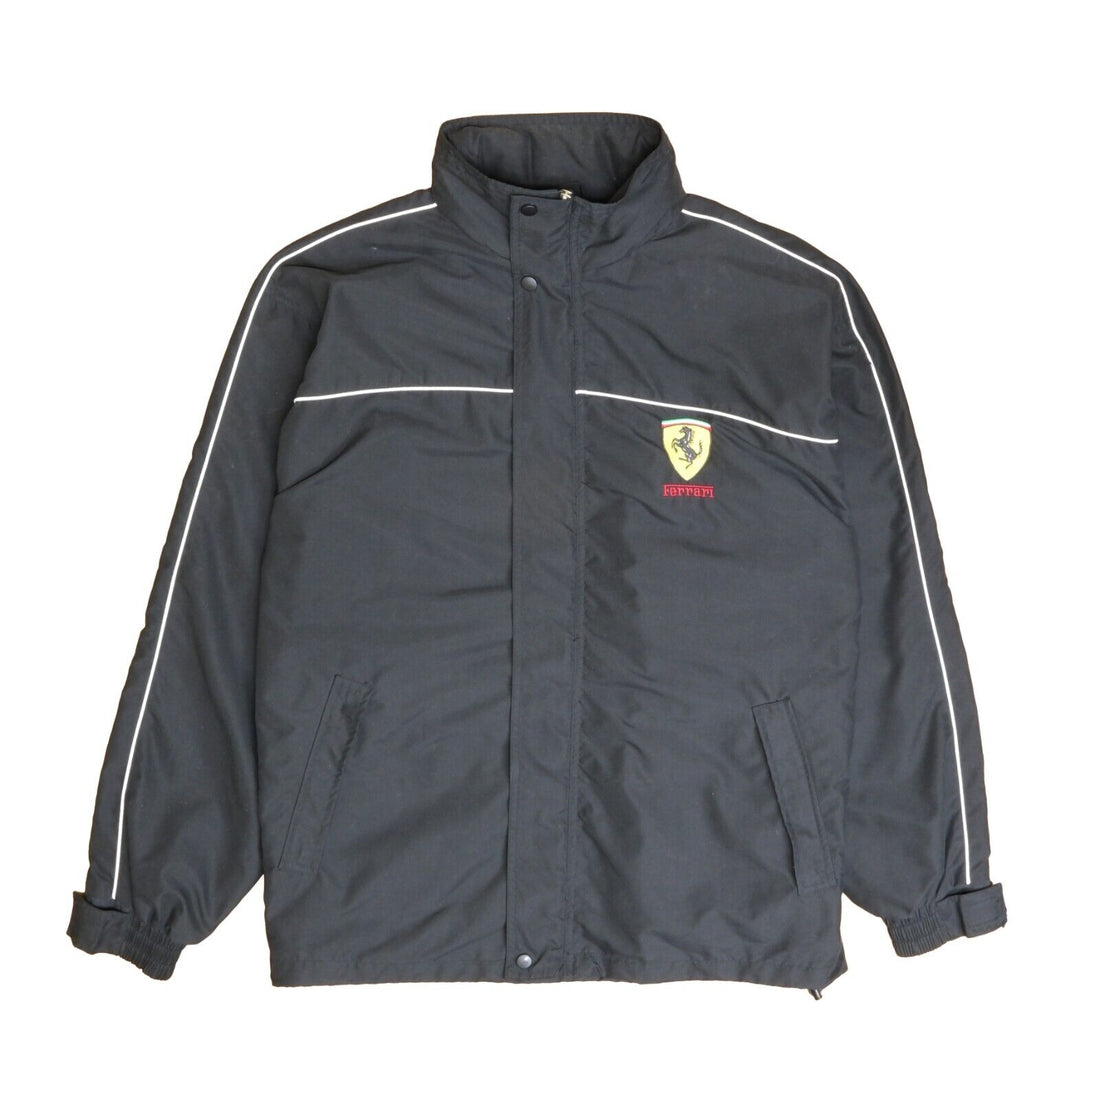 Vintage Ferrari Light Jacket Size Large Black Embroidered